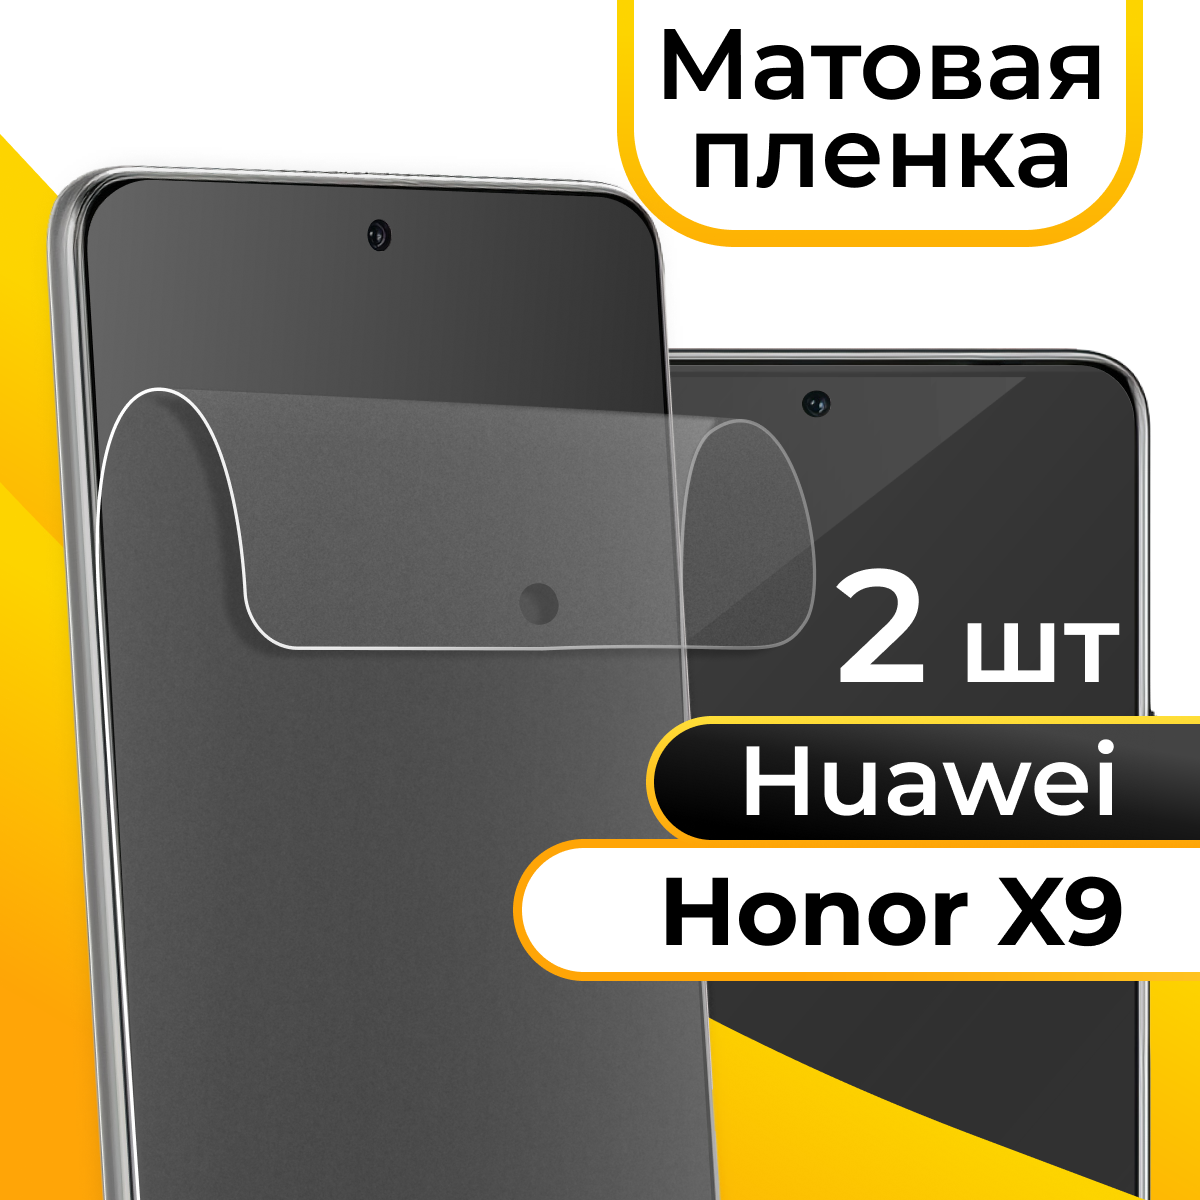 Комплект 2 шт. Матовая пленка для смартфона Huawei Honor X9 / Защитная противоударная пленка на телефон Хуавей Хонор Х9 / Гидрогелевая самовосстанавливающаяся пленка